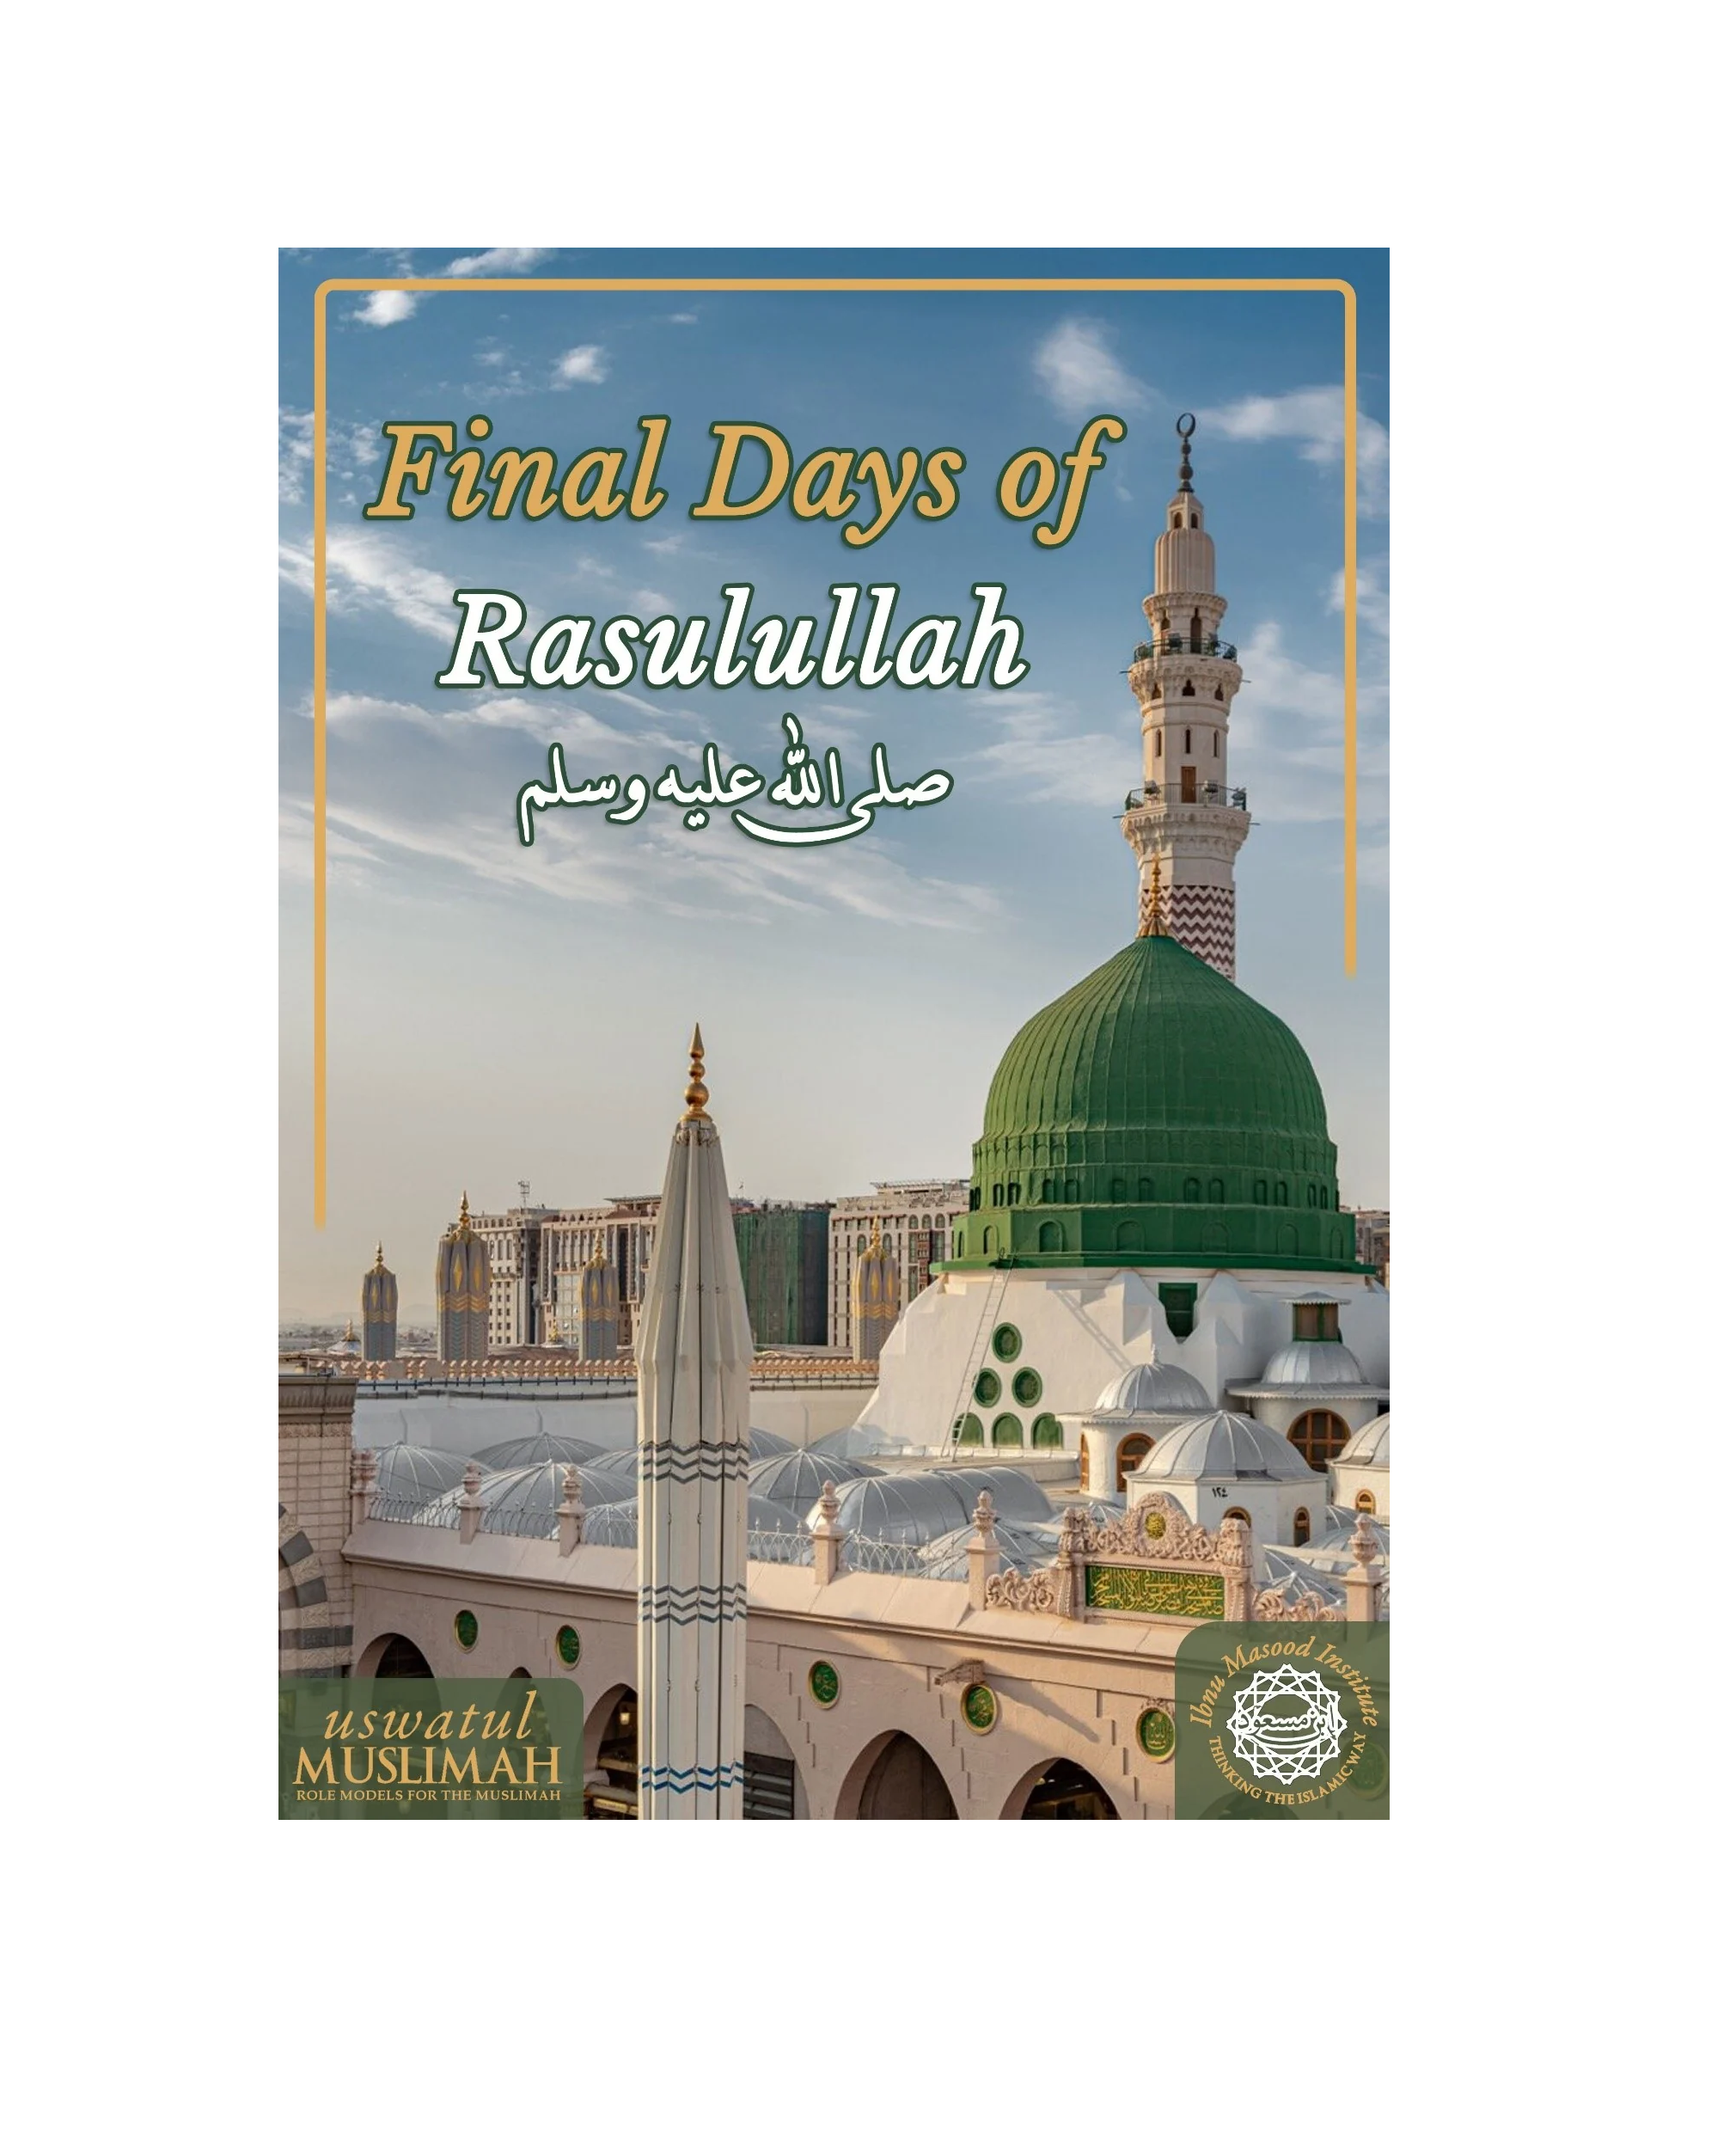 Final Days of Rasulullah (ﷺ) uitgegee deur Uswatul Muslimah